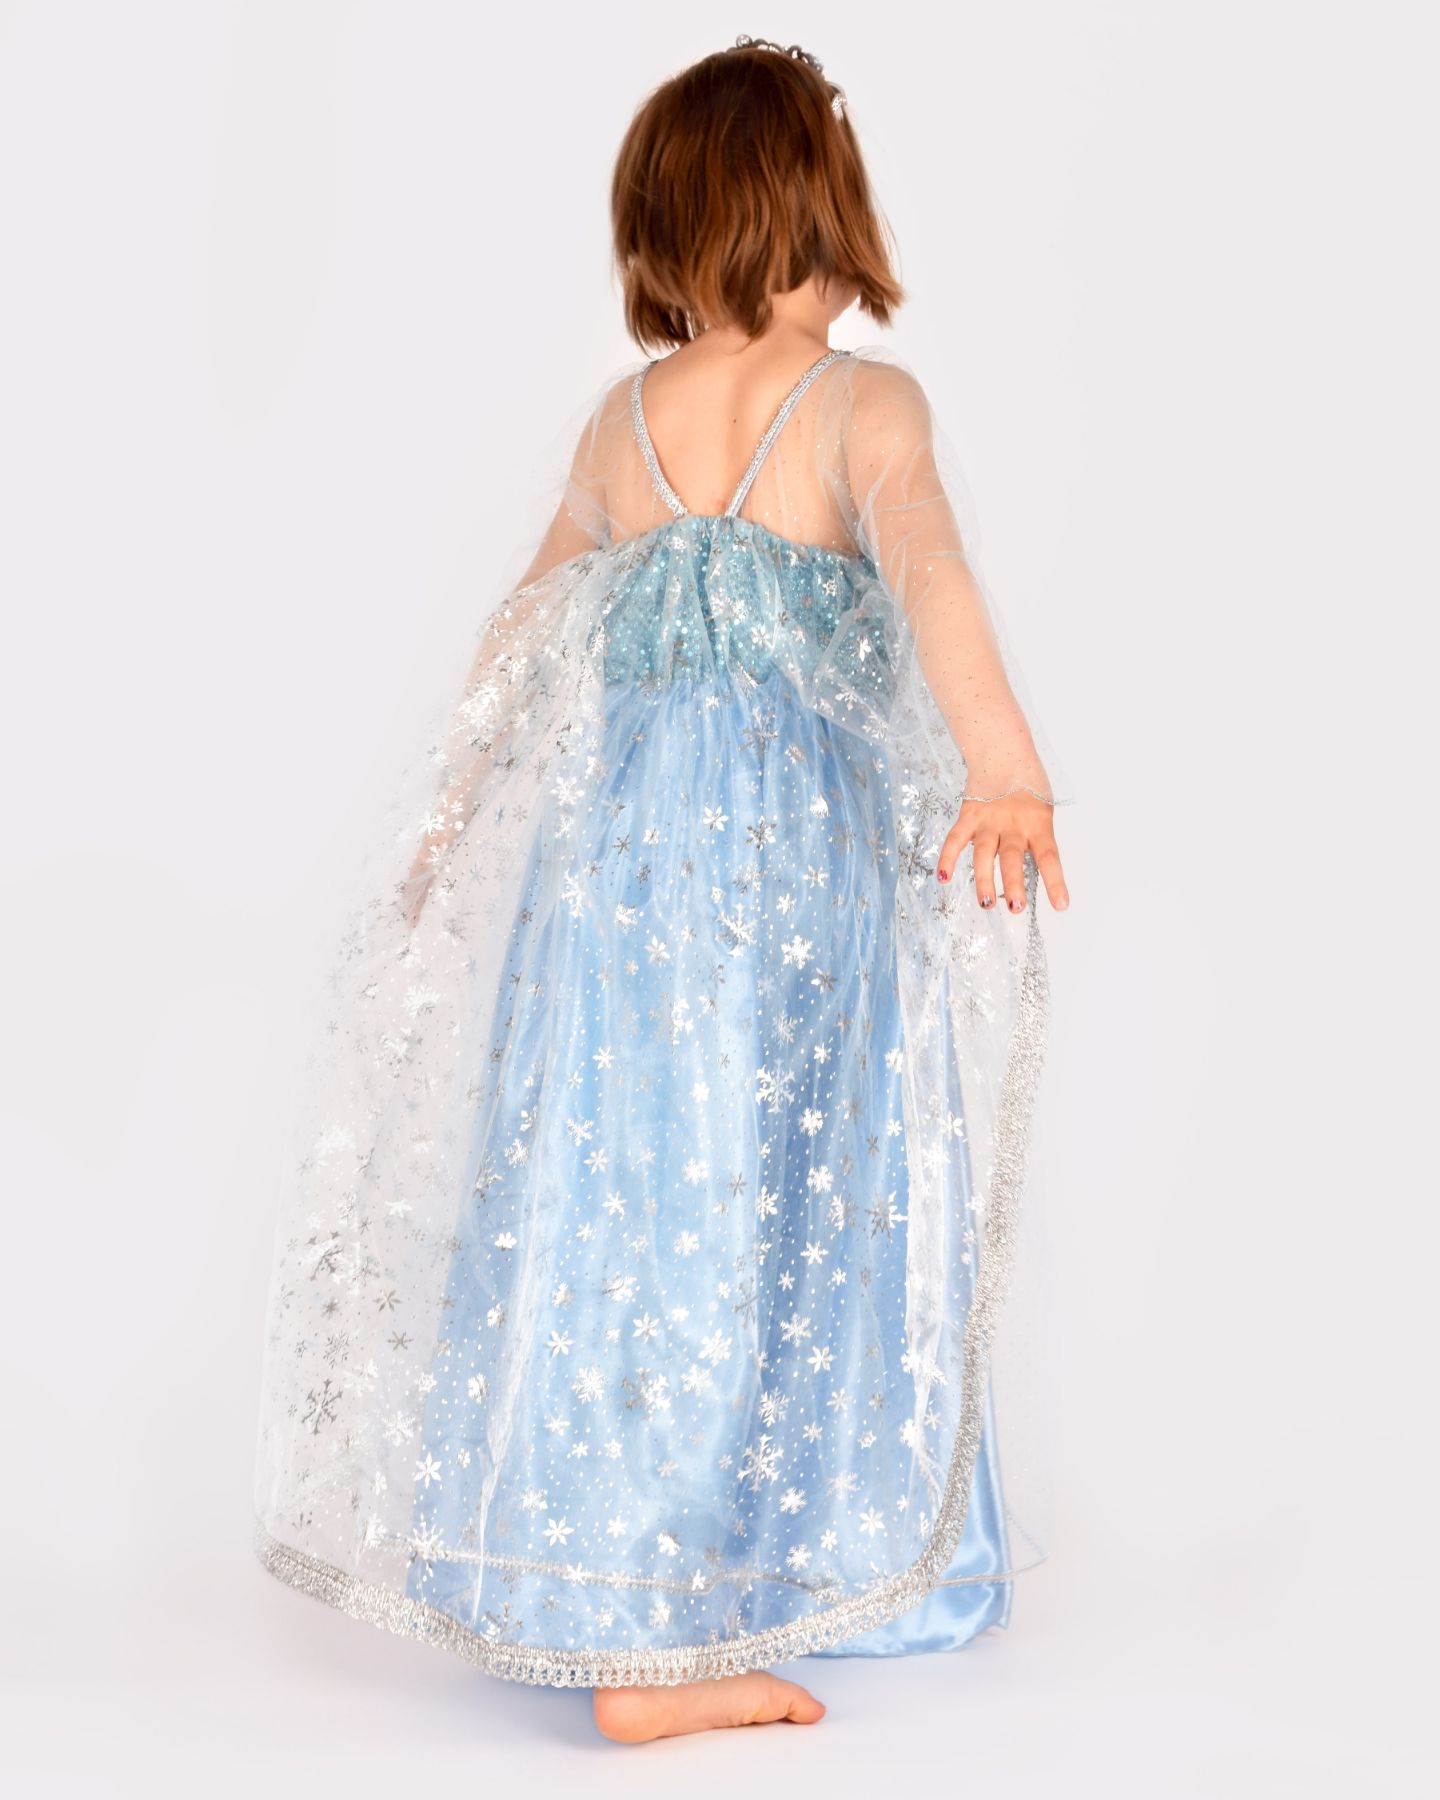 Flicka som bär en ljusblå Frost-inspirerad prinsessklänning. Flickan har ryggen vänd mot kameran, vilket visar det transparenta släpet med silvertryck föreställandes snöflingor.